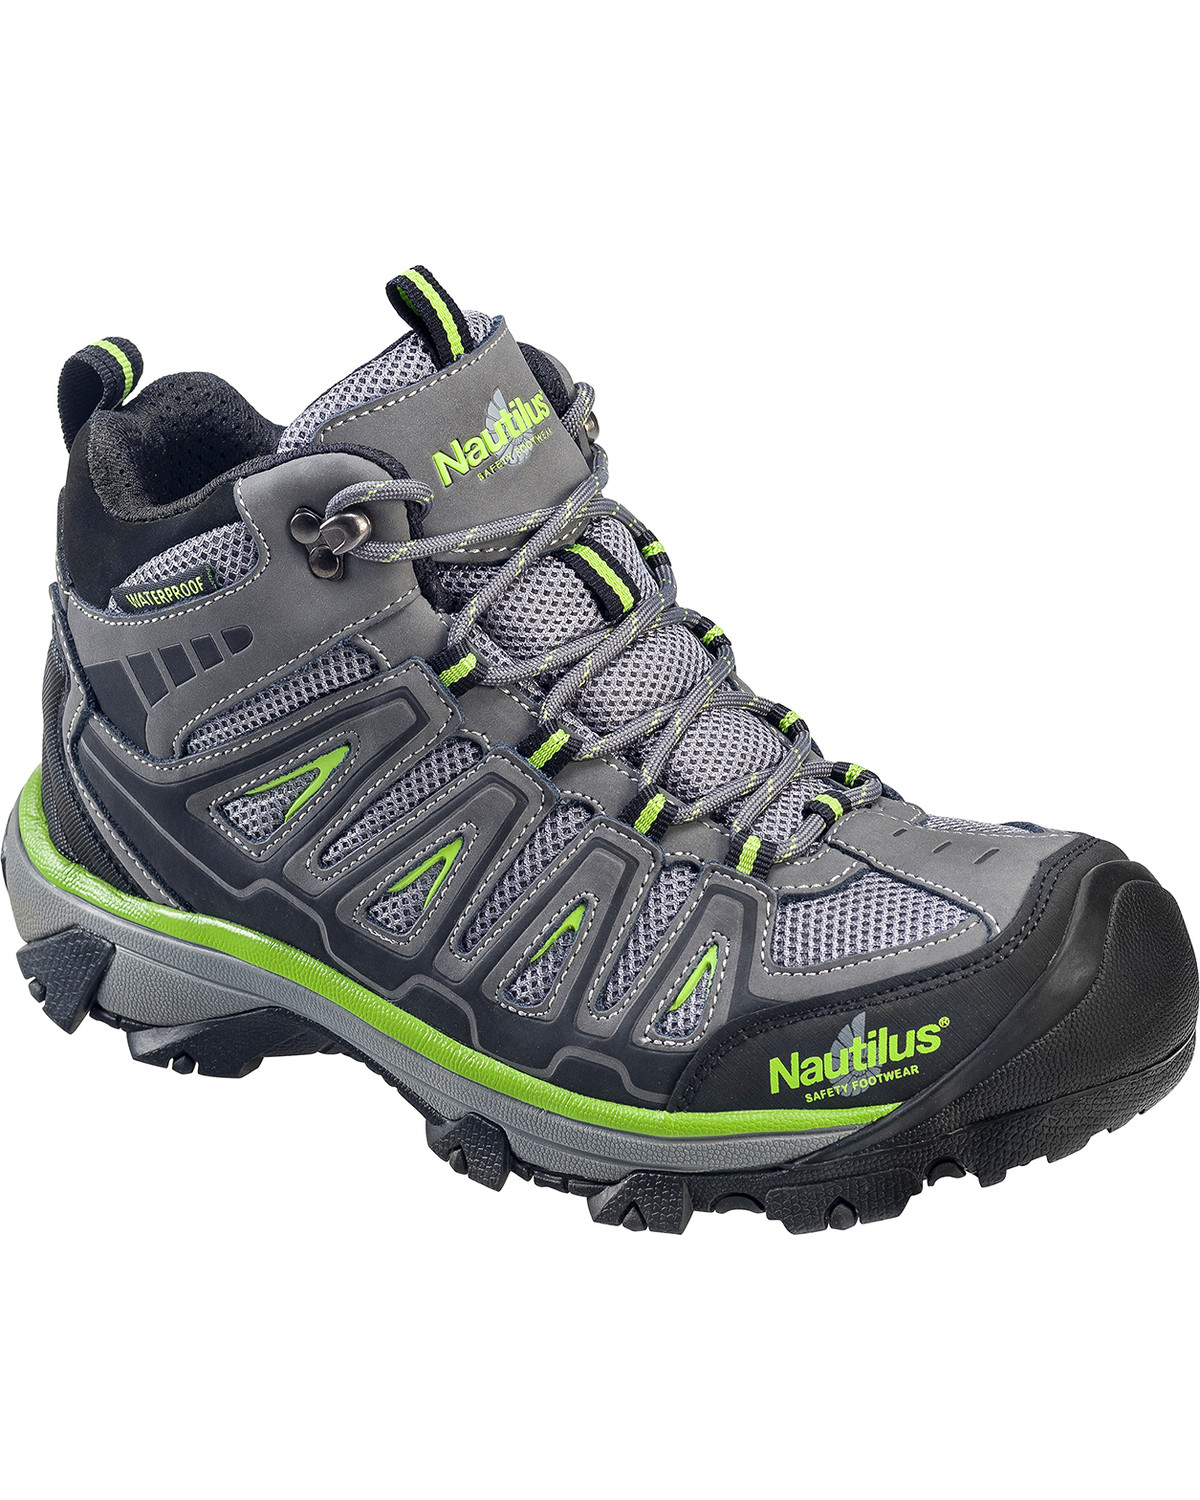 Nautilus Men's Lightweight Waterproof HIker Work Boots - Steel Toe